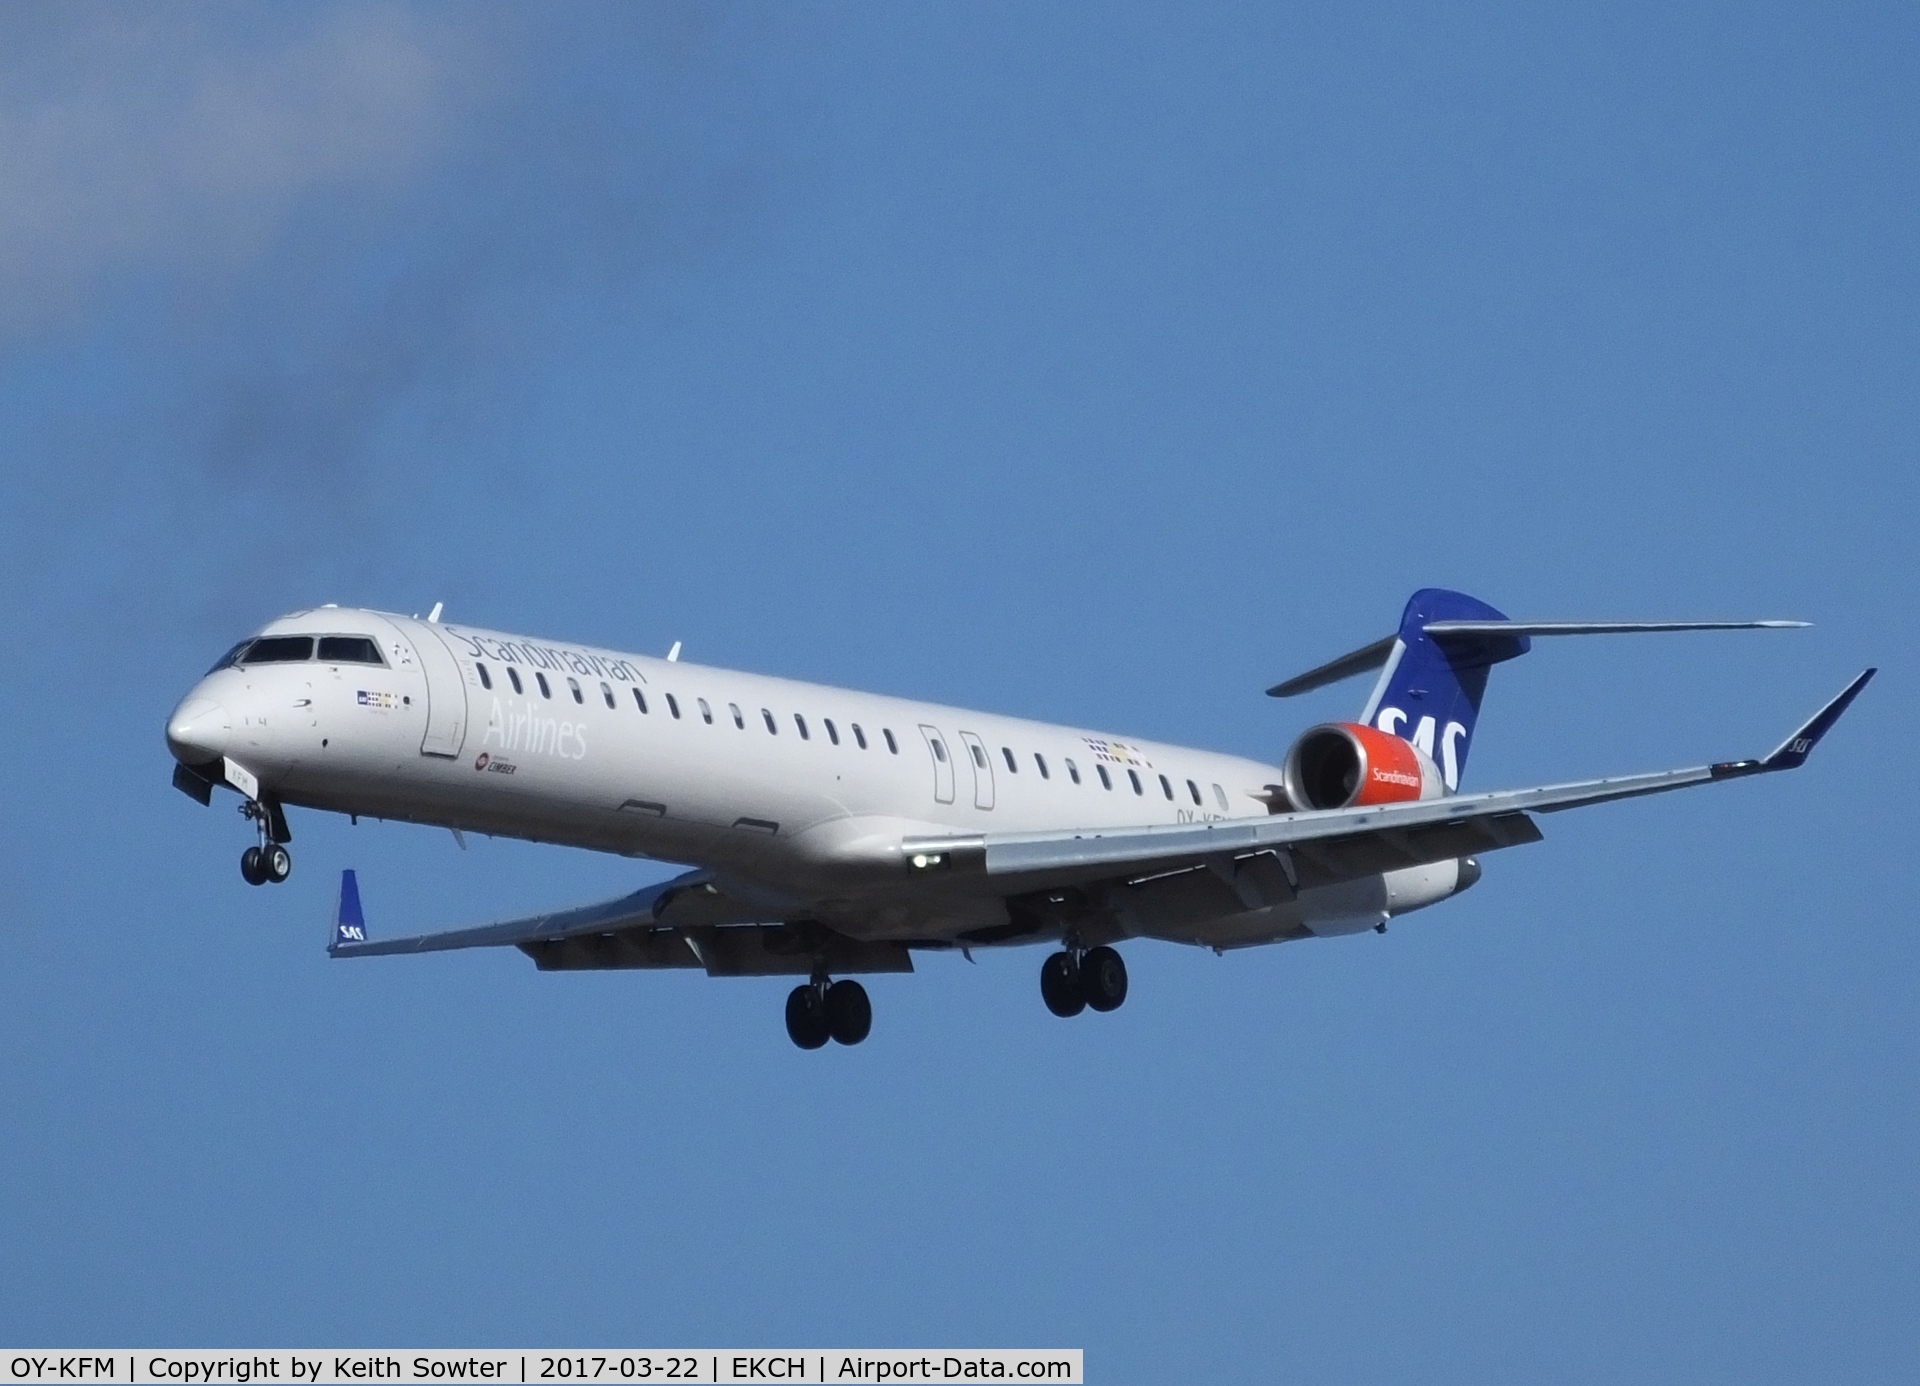 OY-KFM, 2010 Bombardier CRJ-900LR (CL-600-2D24) C/N 15250, Short finals to land